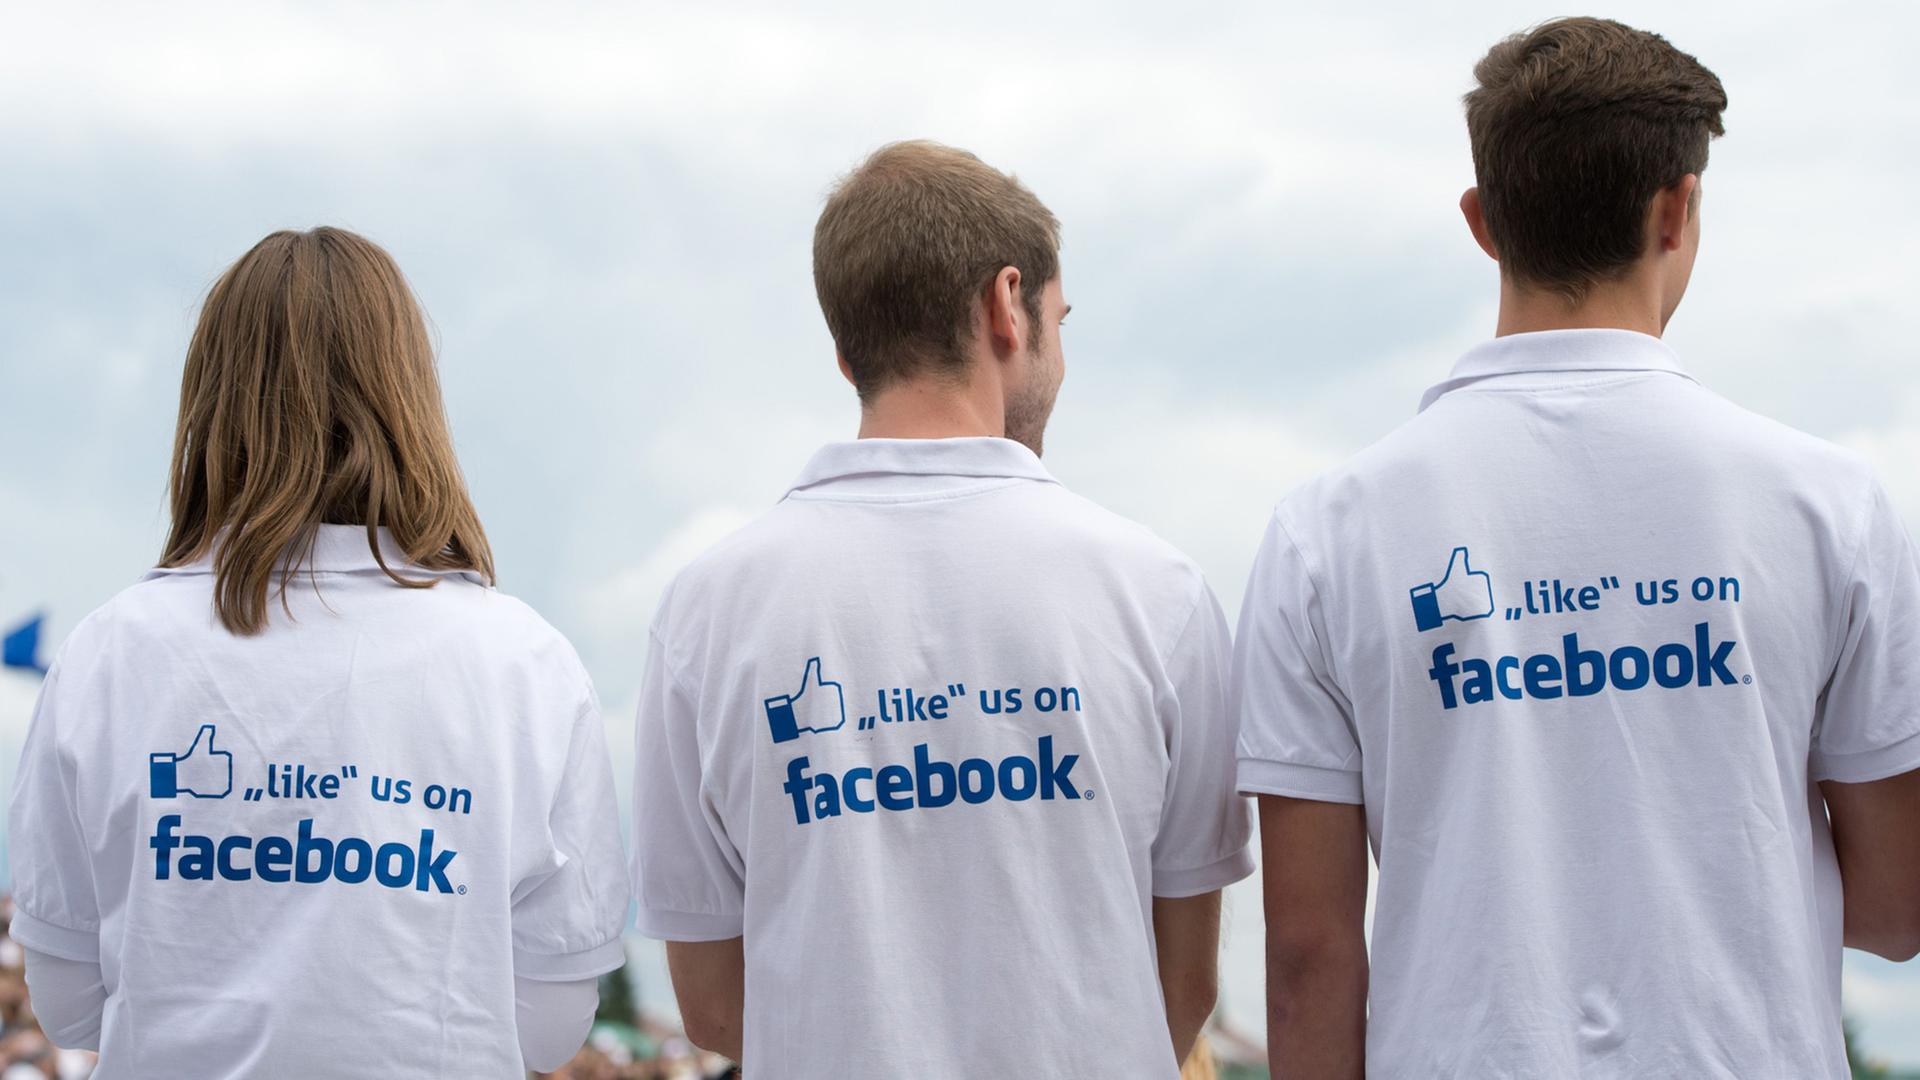 Drei Jugendliche tragen T-Shirts mit der Aufschrift "like us on Facebook" auf dem Rücken. 